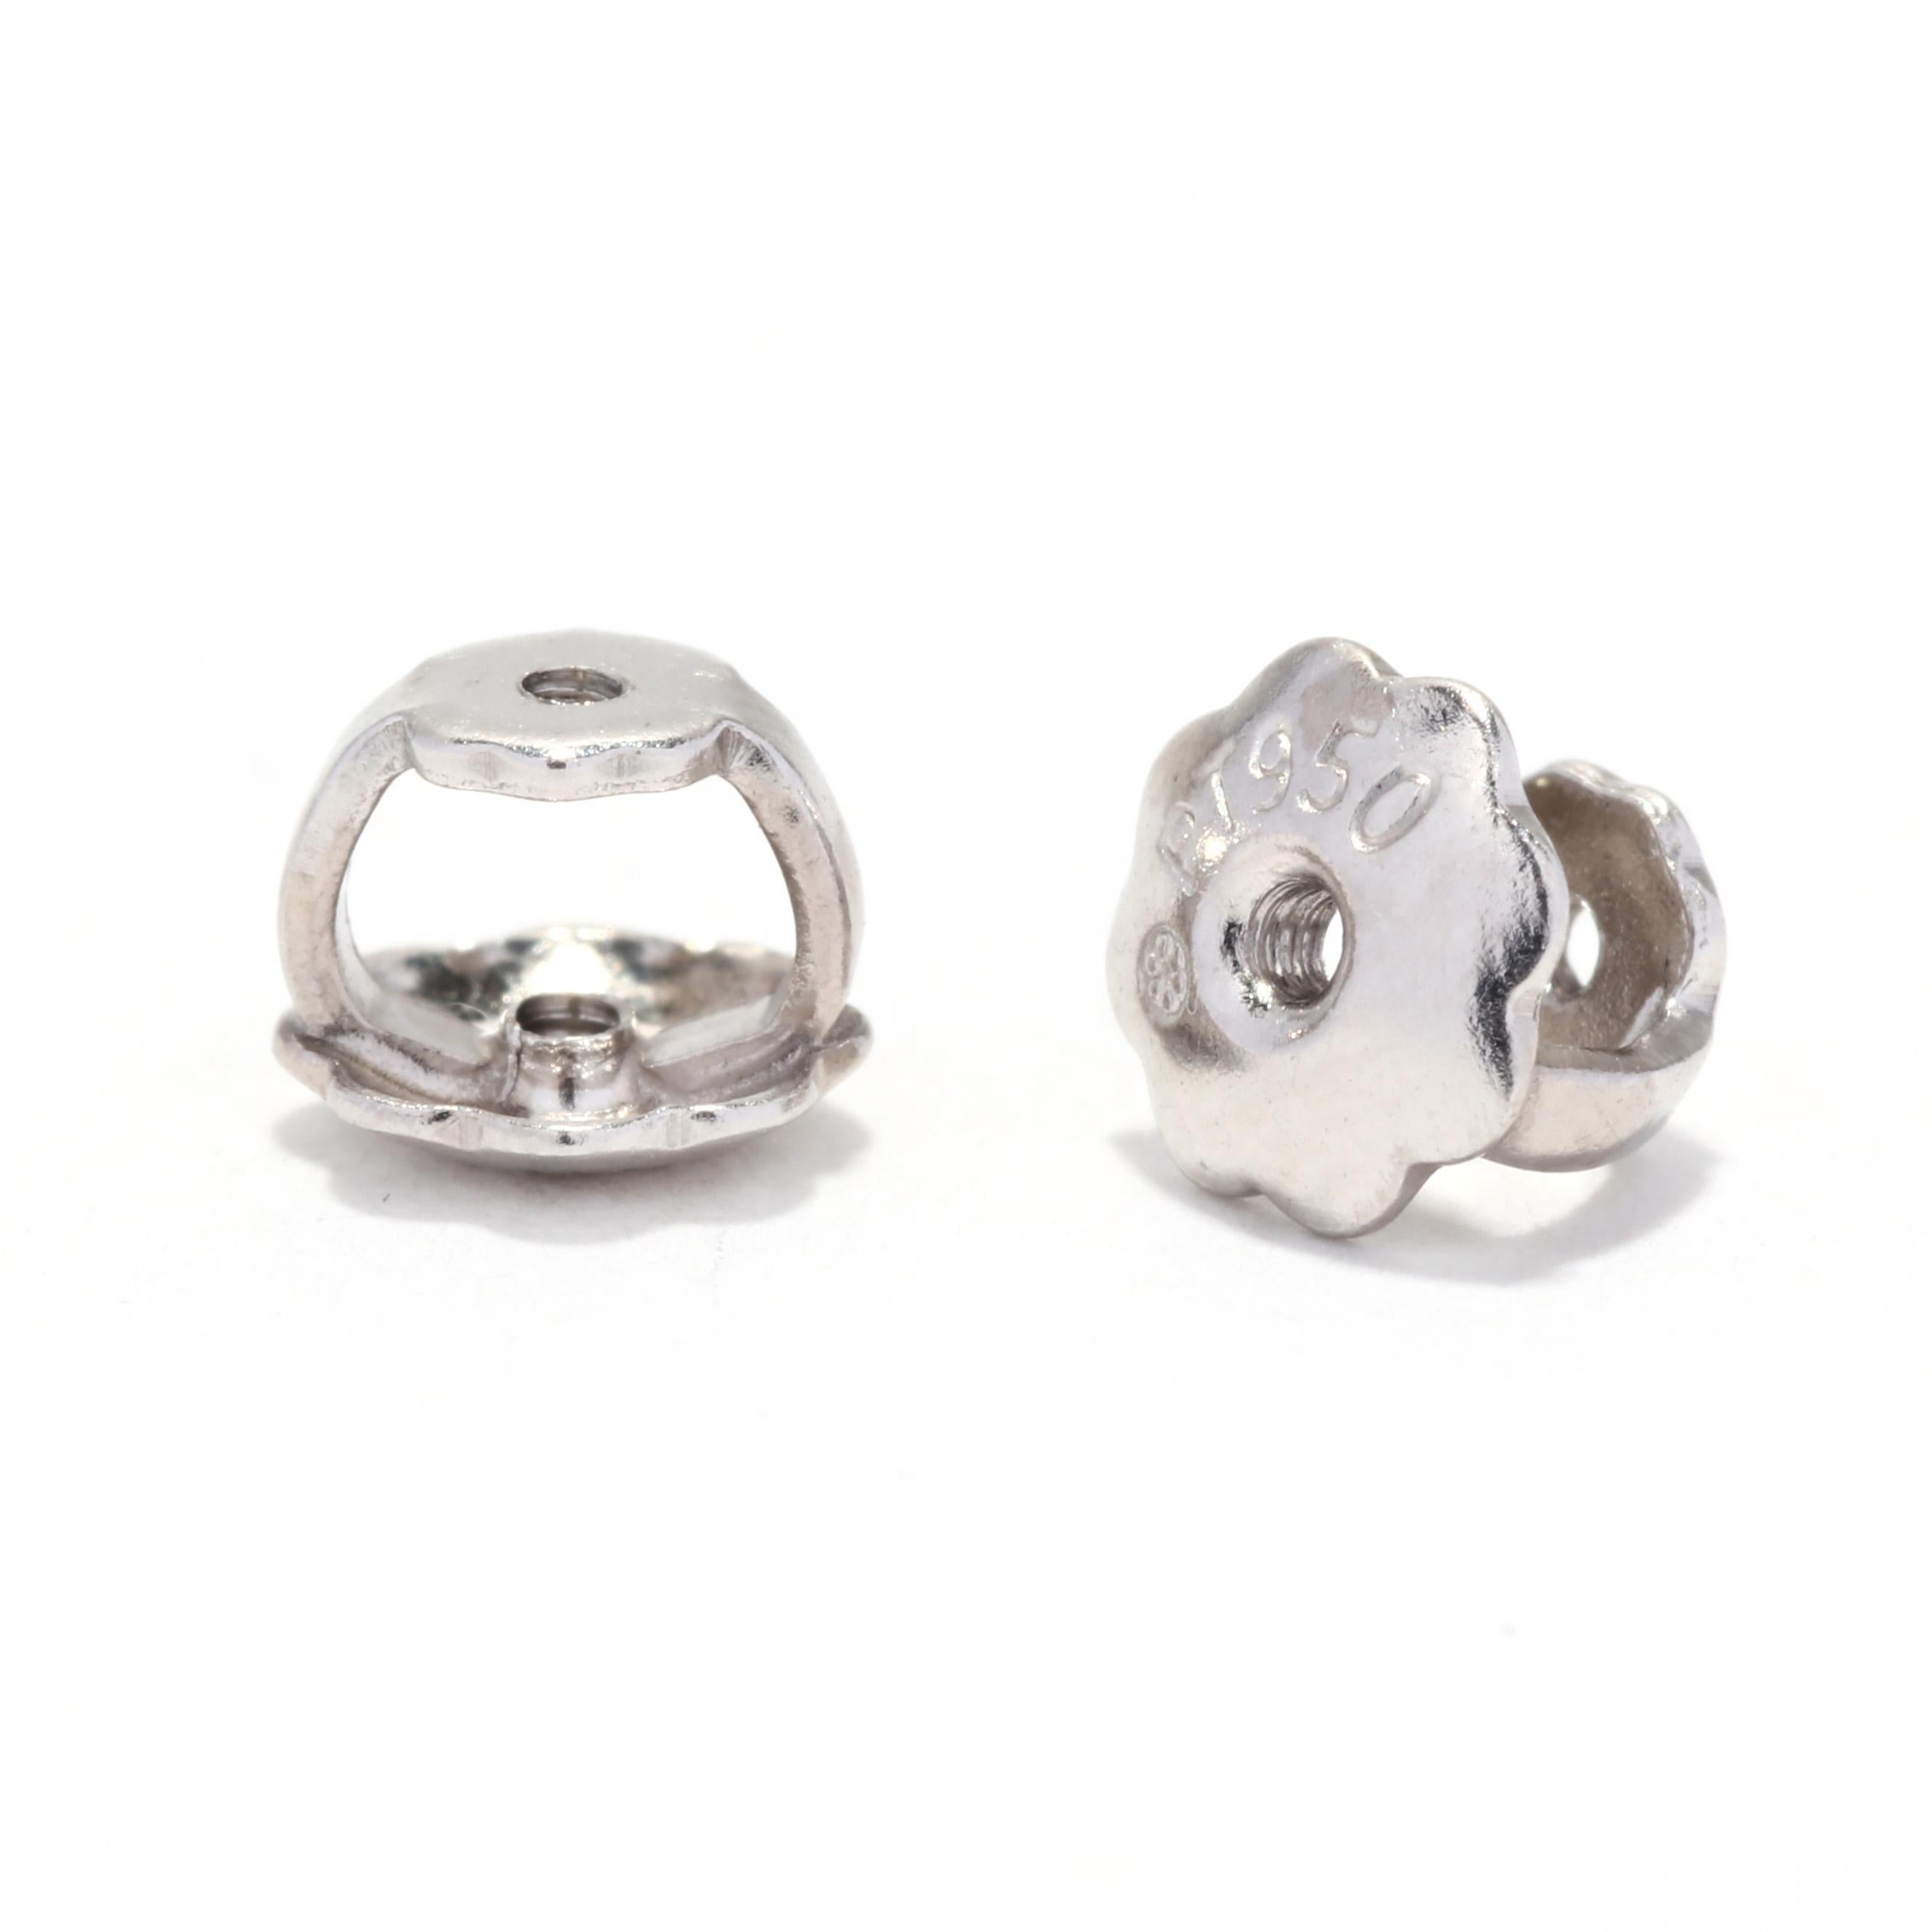 Brilliant Cut Diamond Stud Earrings, Platinum, Length 4.5 MM, Simple Diamond Stud